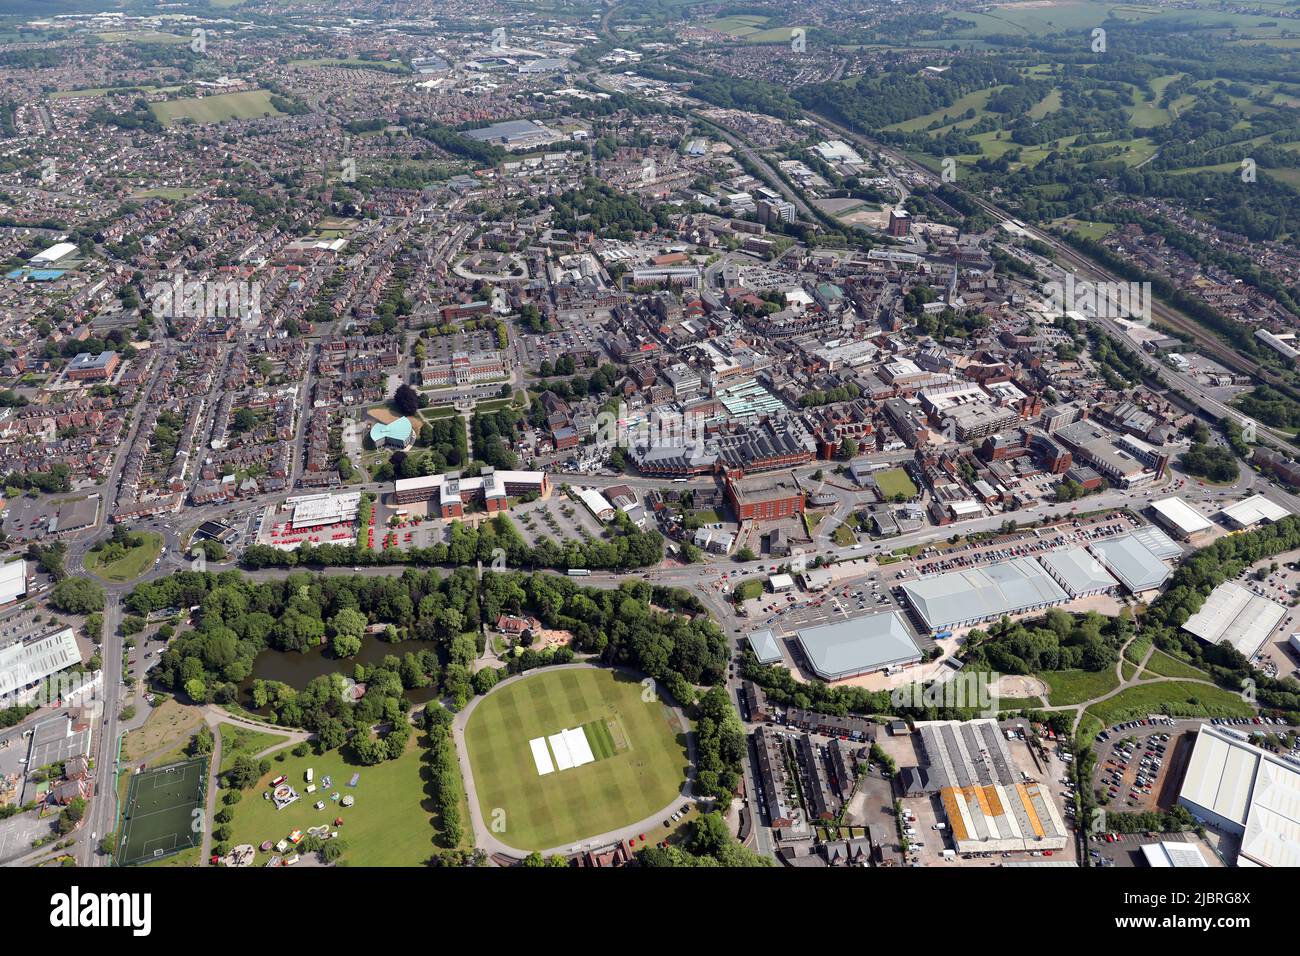 Vista aerea del centro di Chesterfield da sud. Queens Park, Ravenside Retail Park e la strada A619 sono prominenti in primo piano. Foto Stock